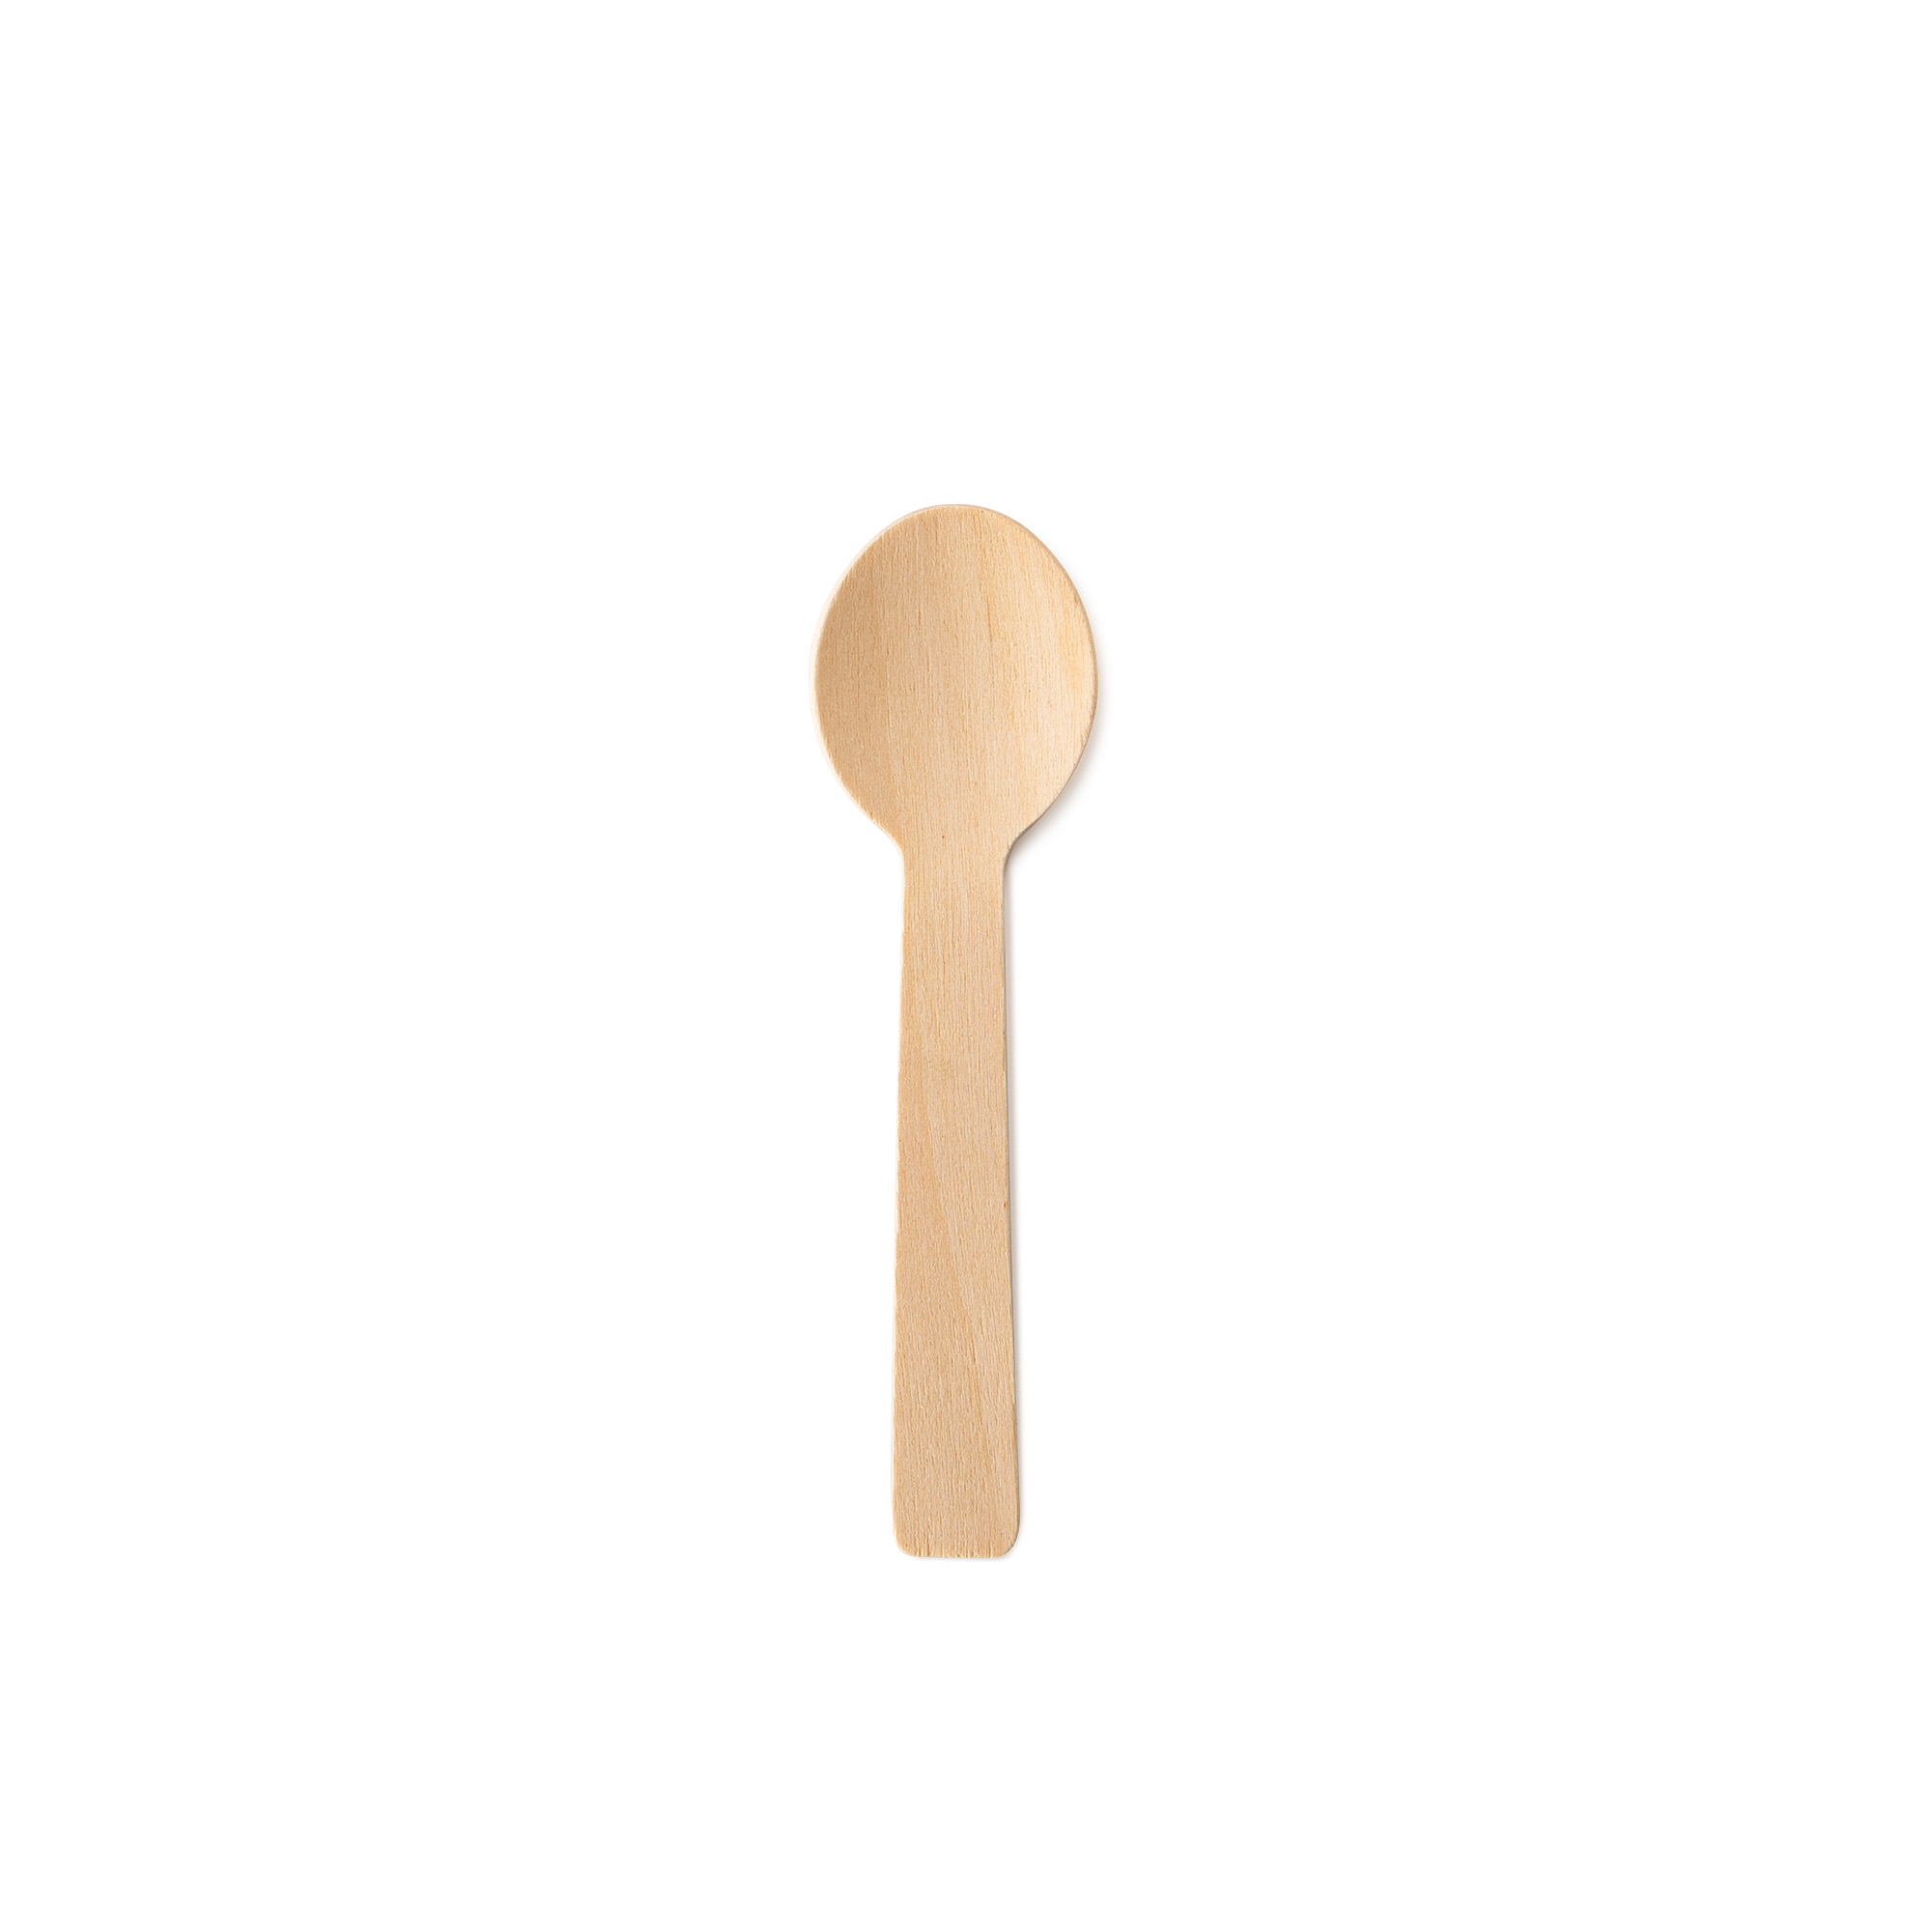 TAIR CHU wooden spoon